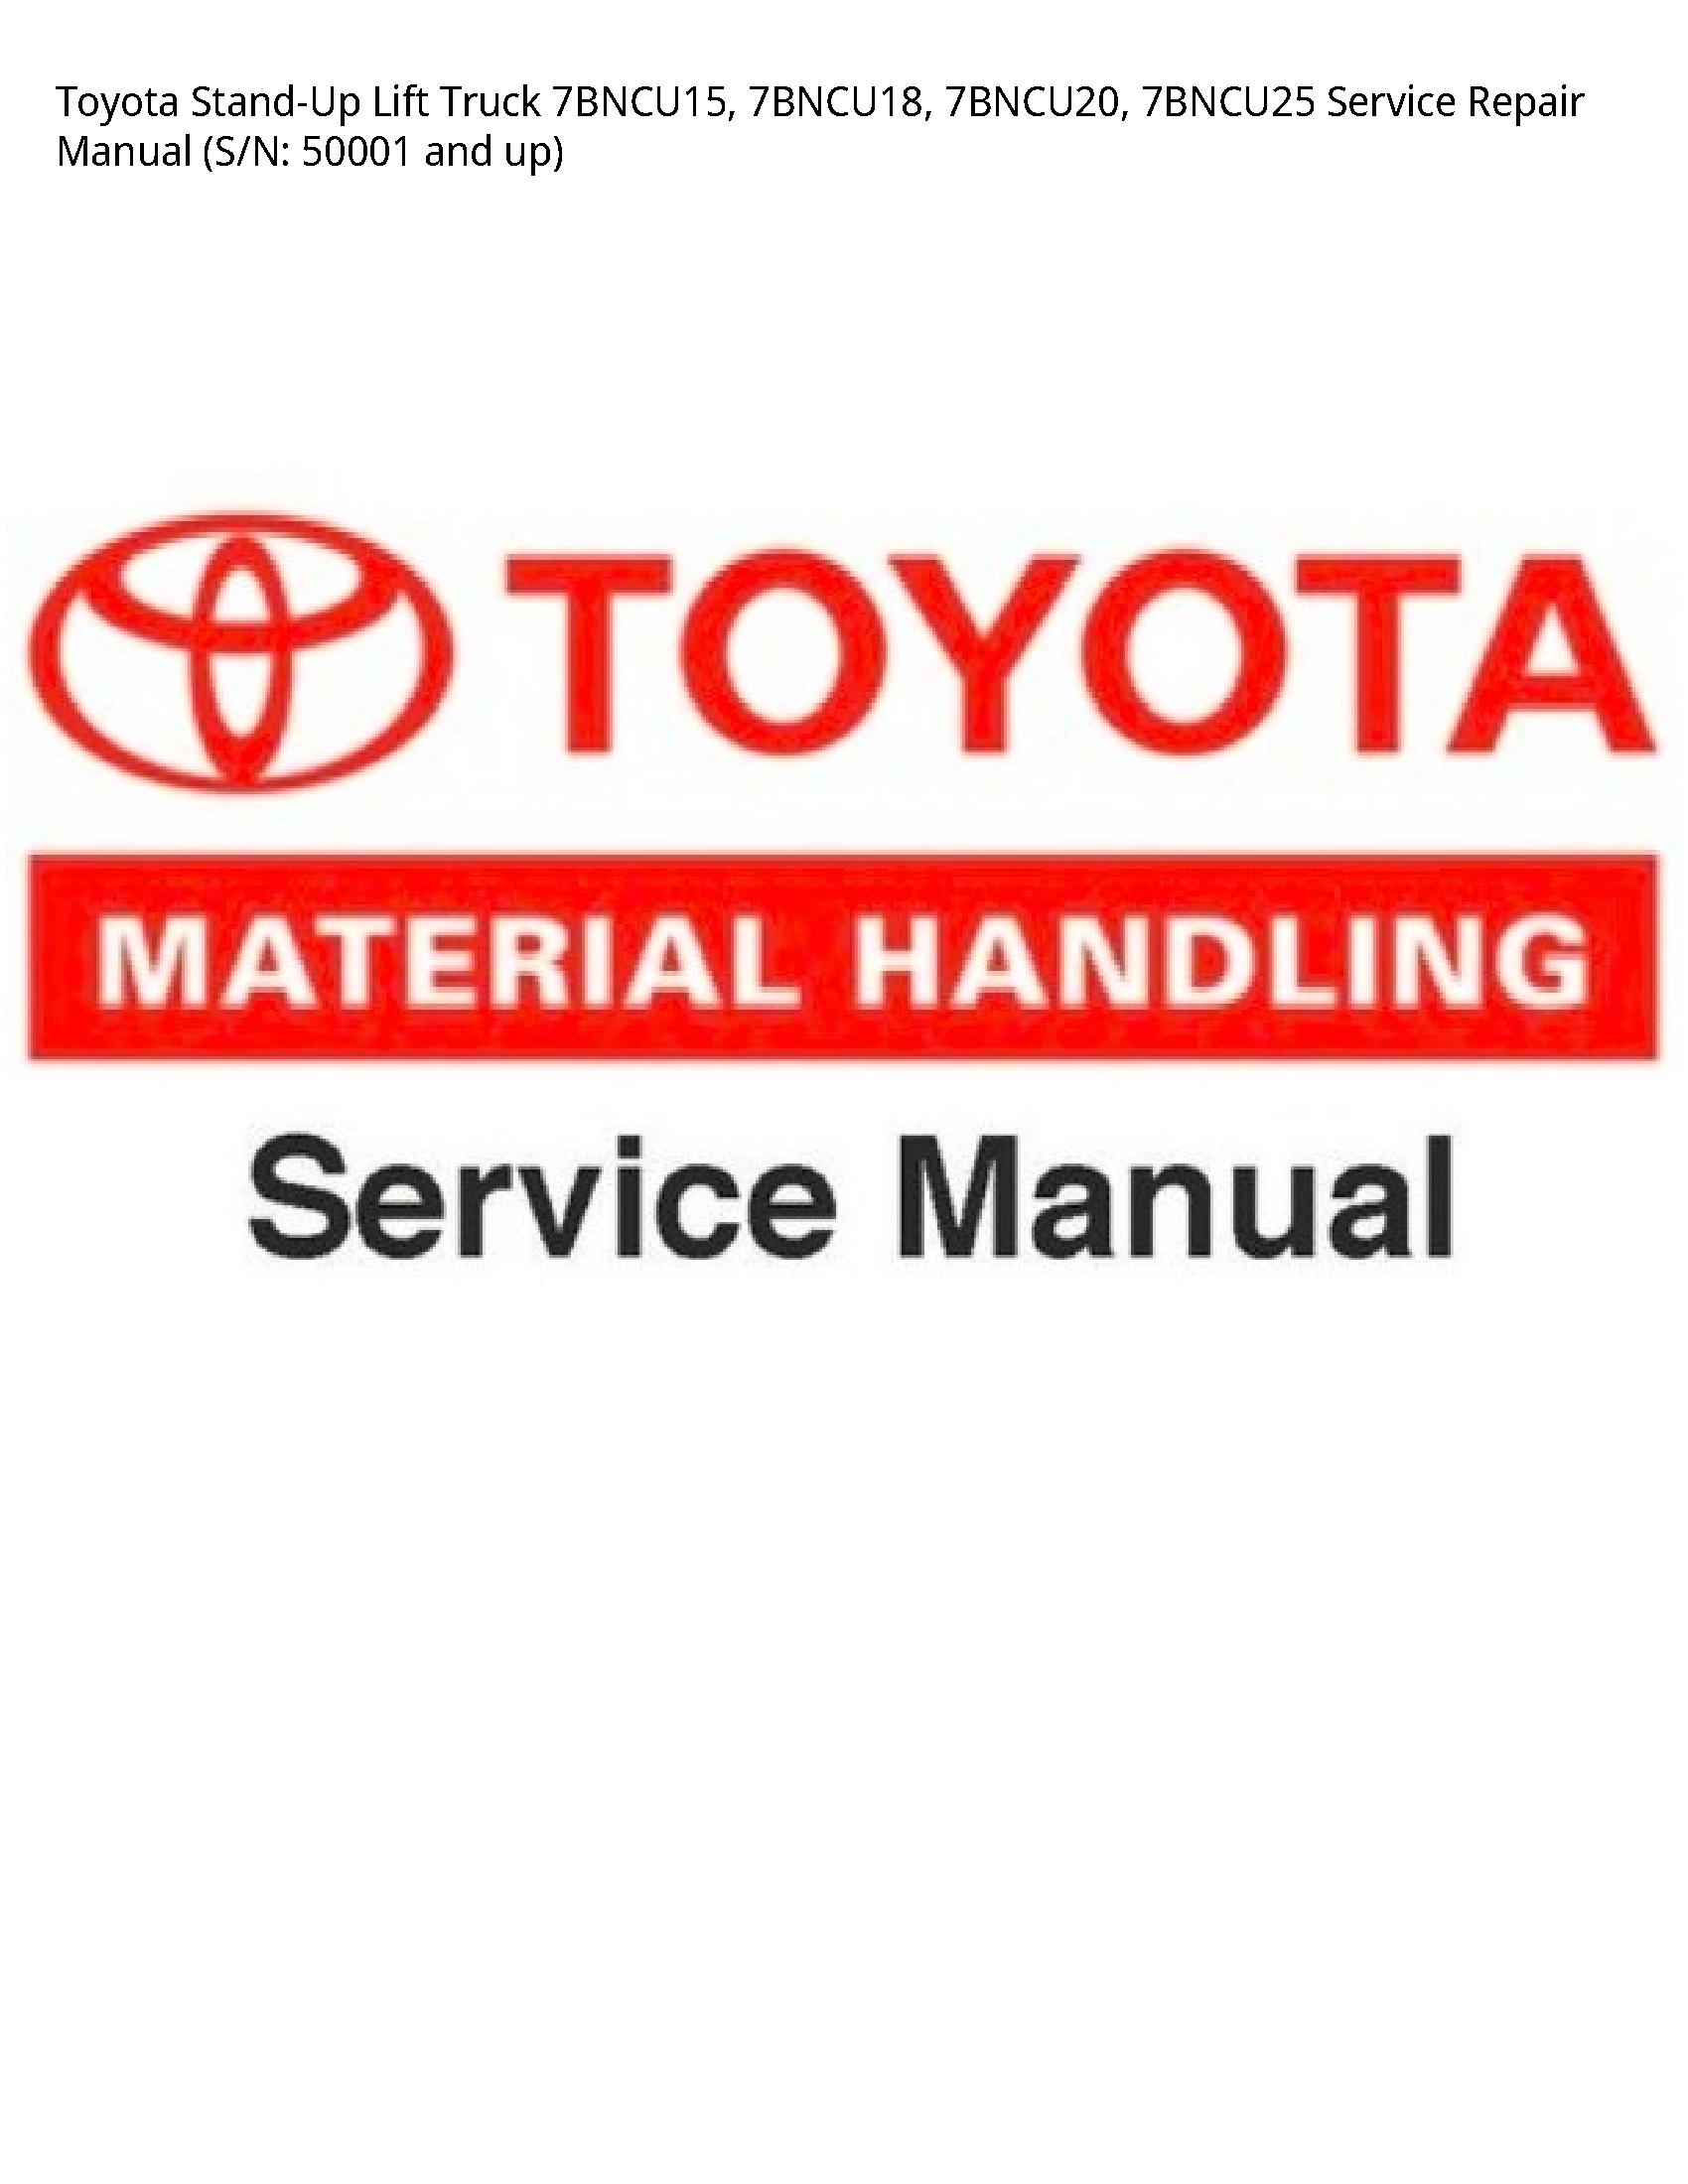 Toyota 7BNCU15 Stand-Up Lift Truck manual